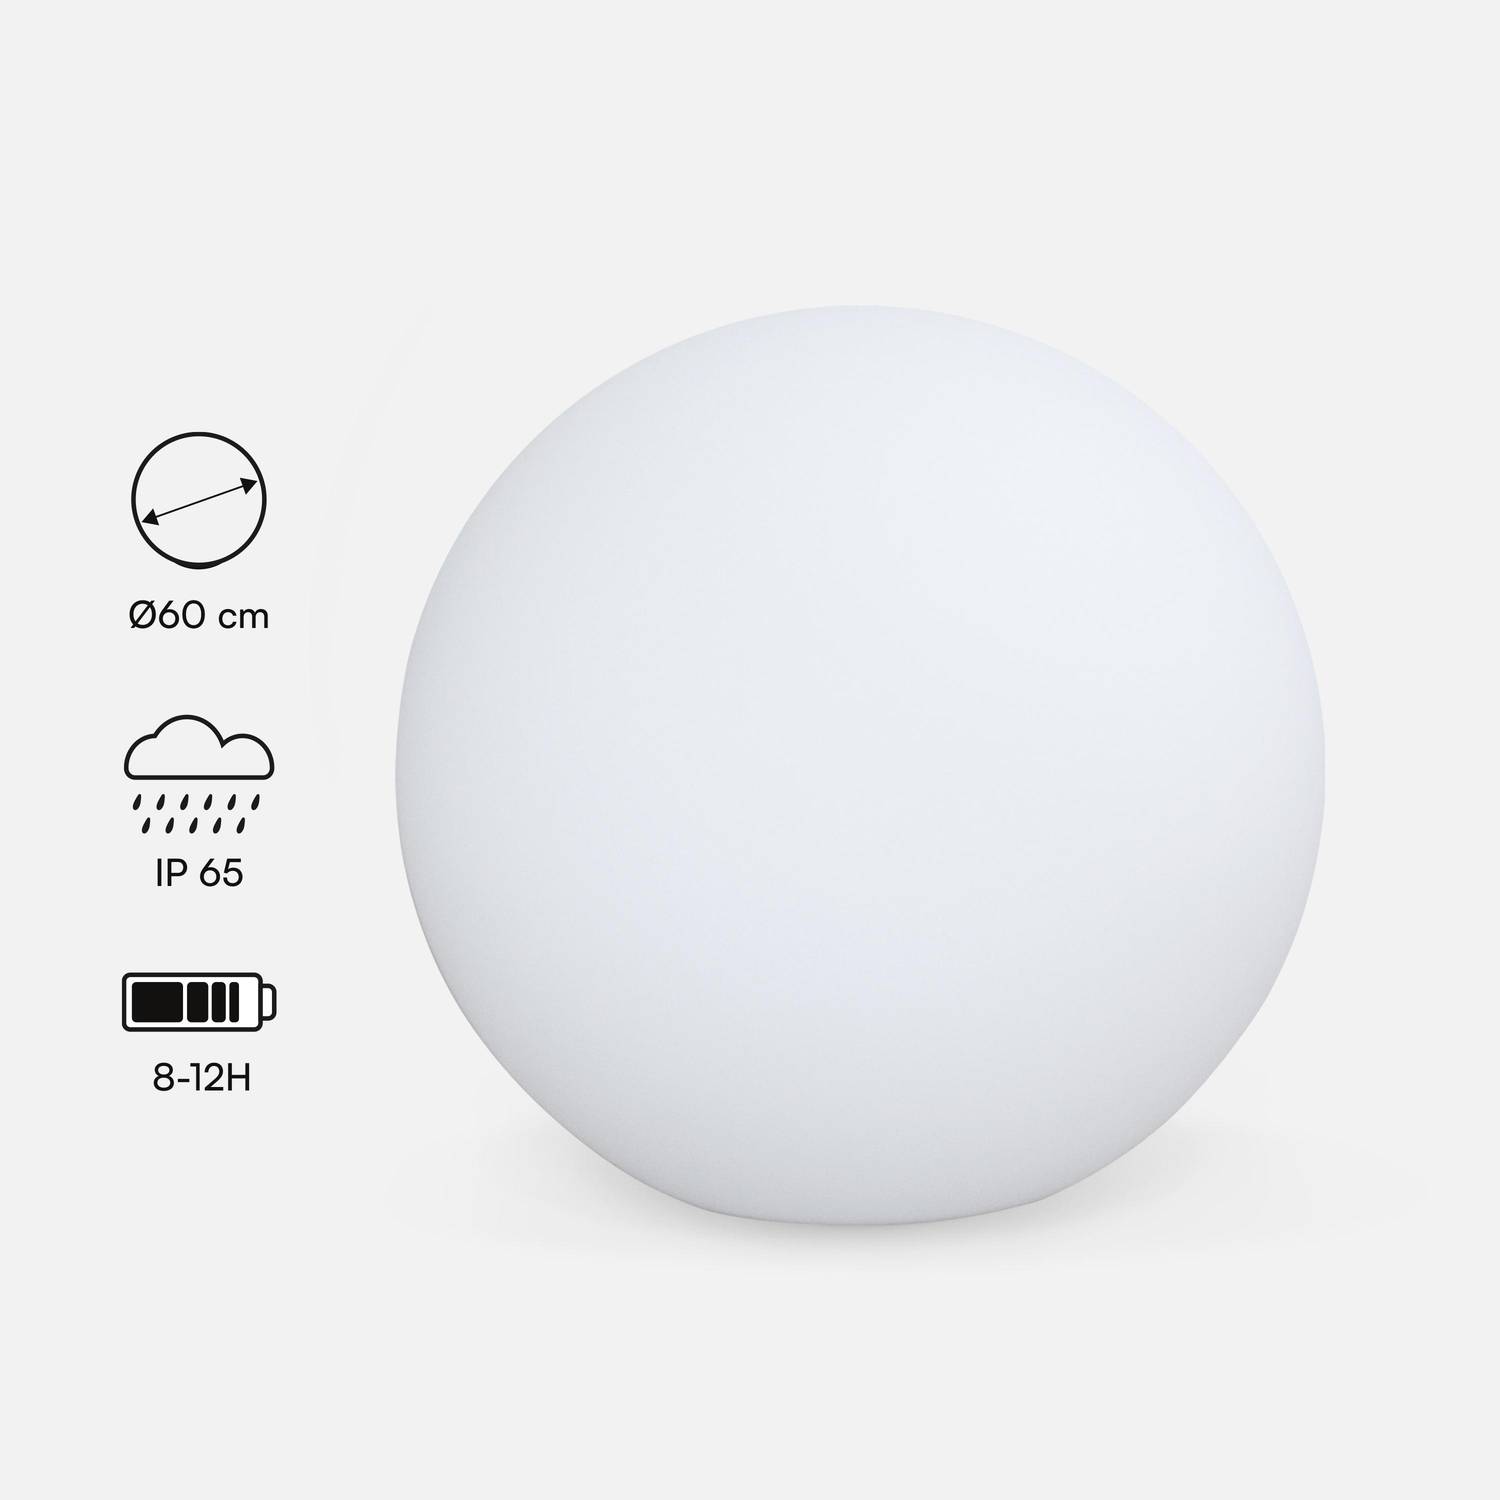 Boule LED 60cm – Sphère décorative lumineuse, Ø60cm, blanc chaud, commande à distance Photo1